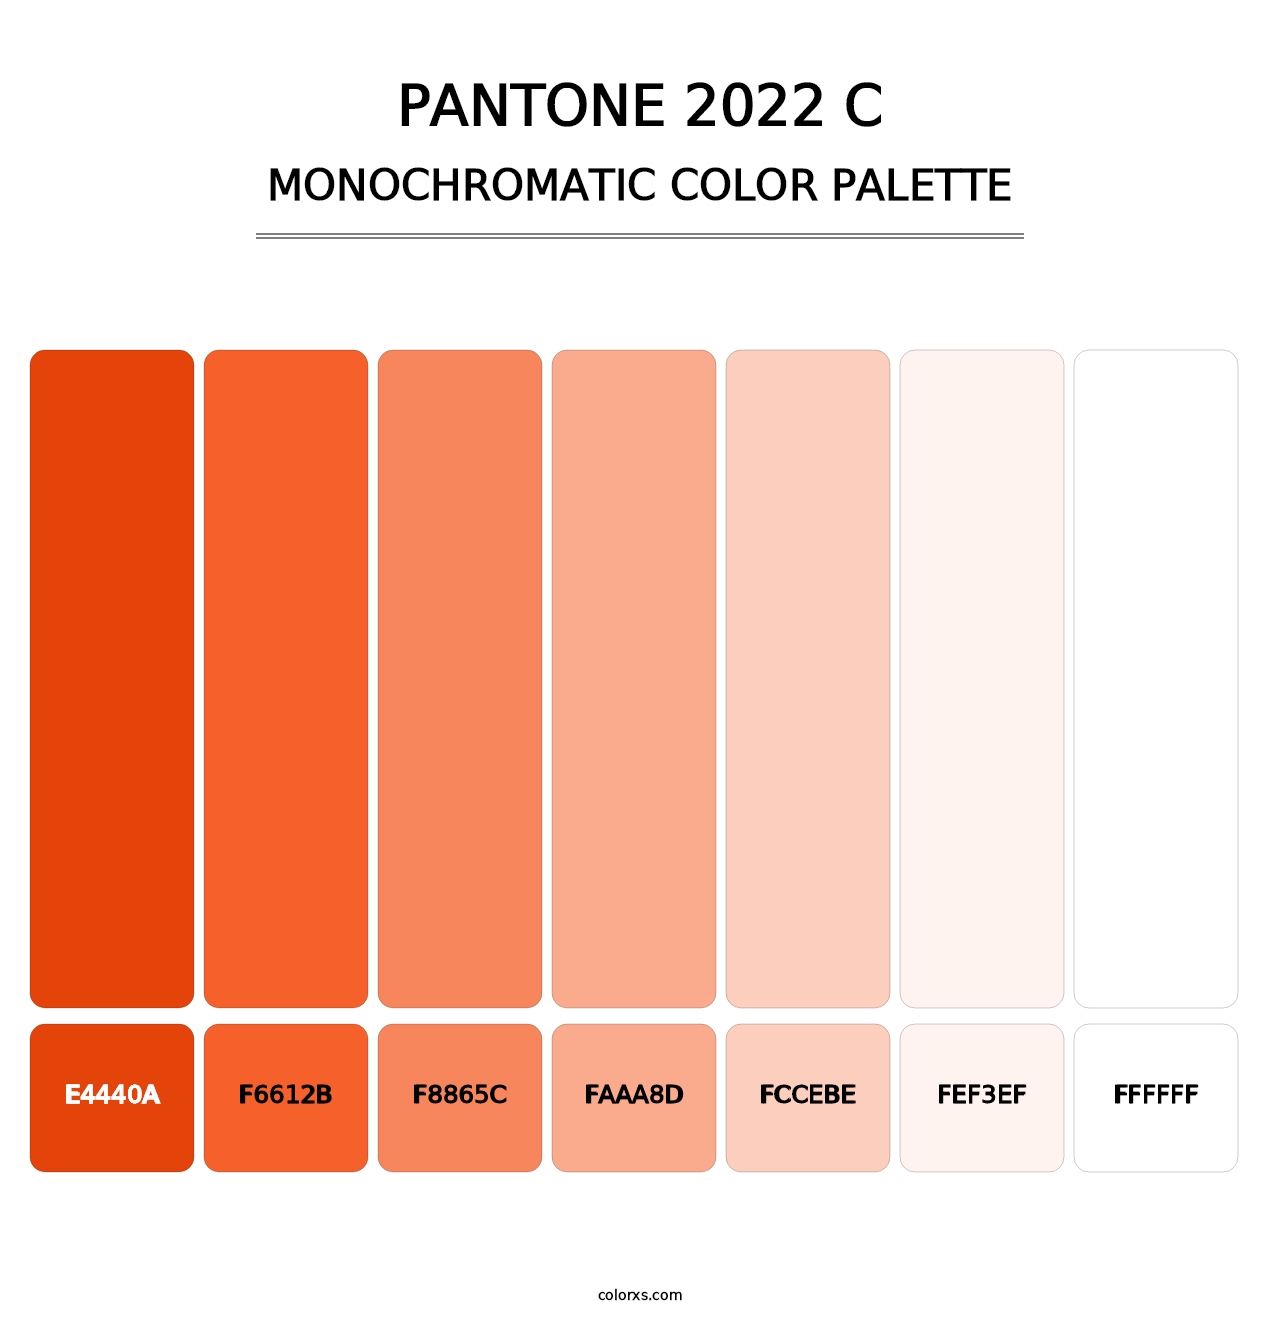 PANTONE 2022 C - Monochromatic Color Palette